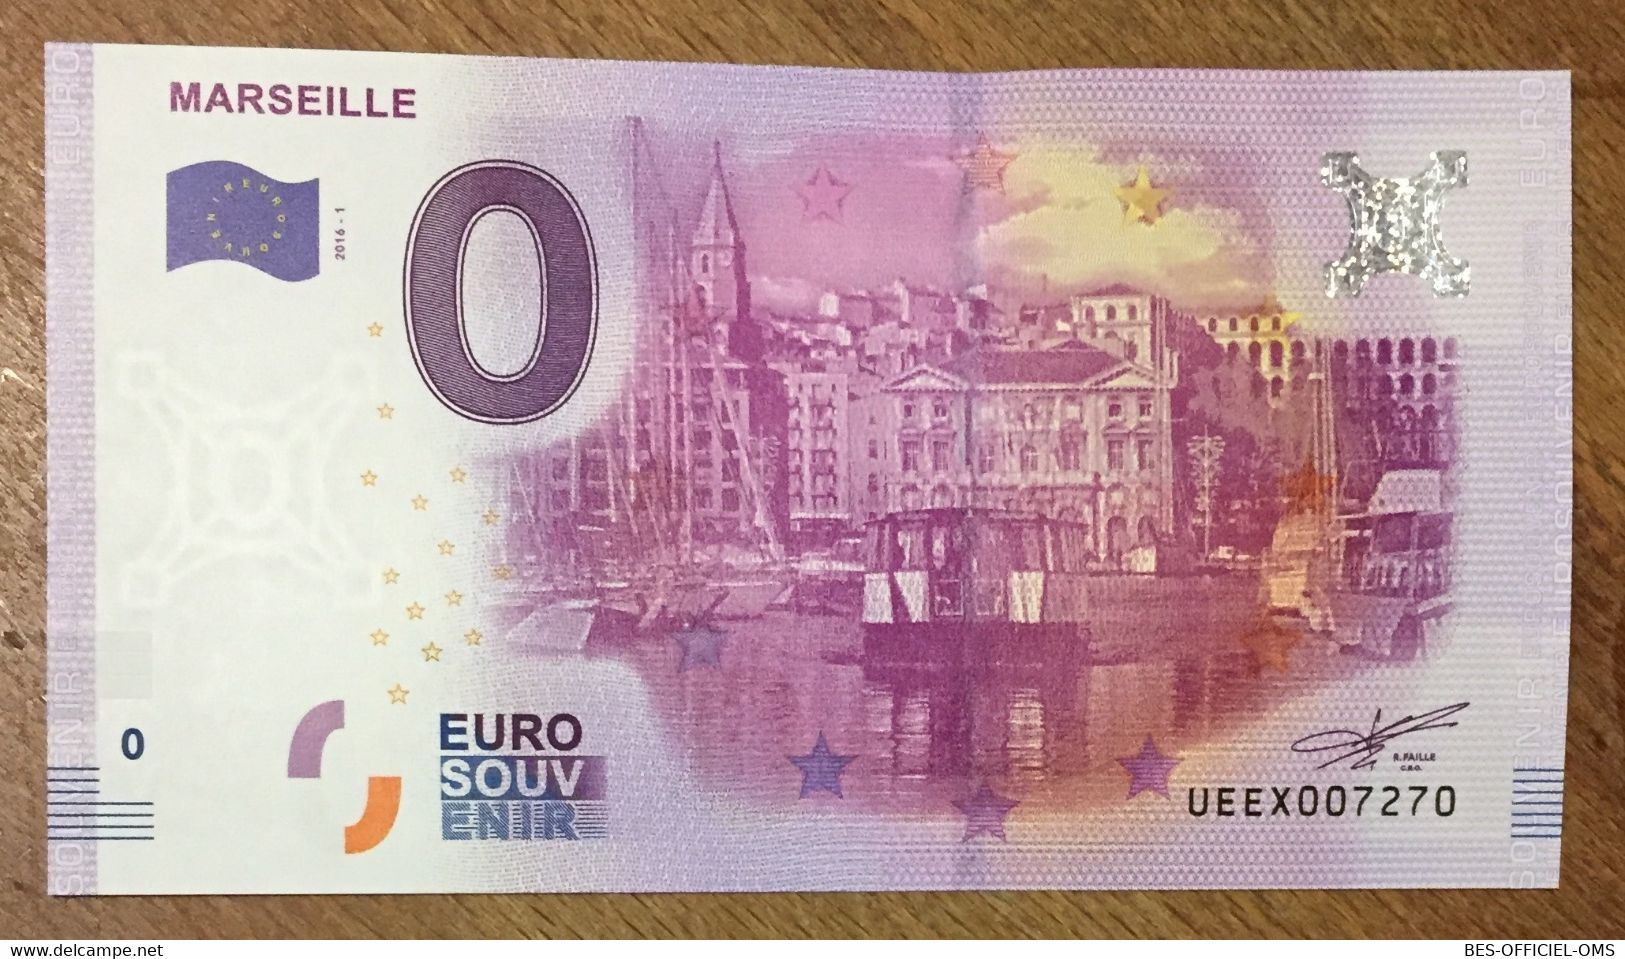 2016 BILLET 0 EURO SOUVENIR DPT 13 MARSEILLE ZERO 0 EURO SCHEIN BANKNOTE PAPER MONEY BANK FERRY BOAT - Privatentwürfe